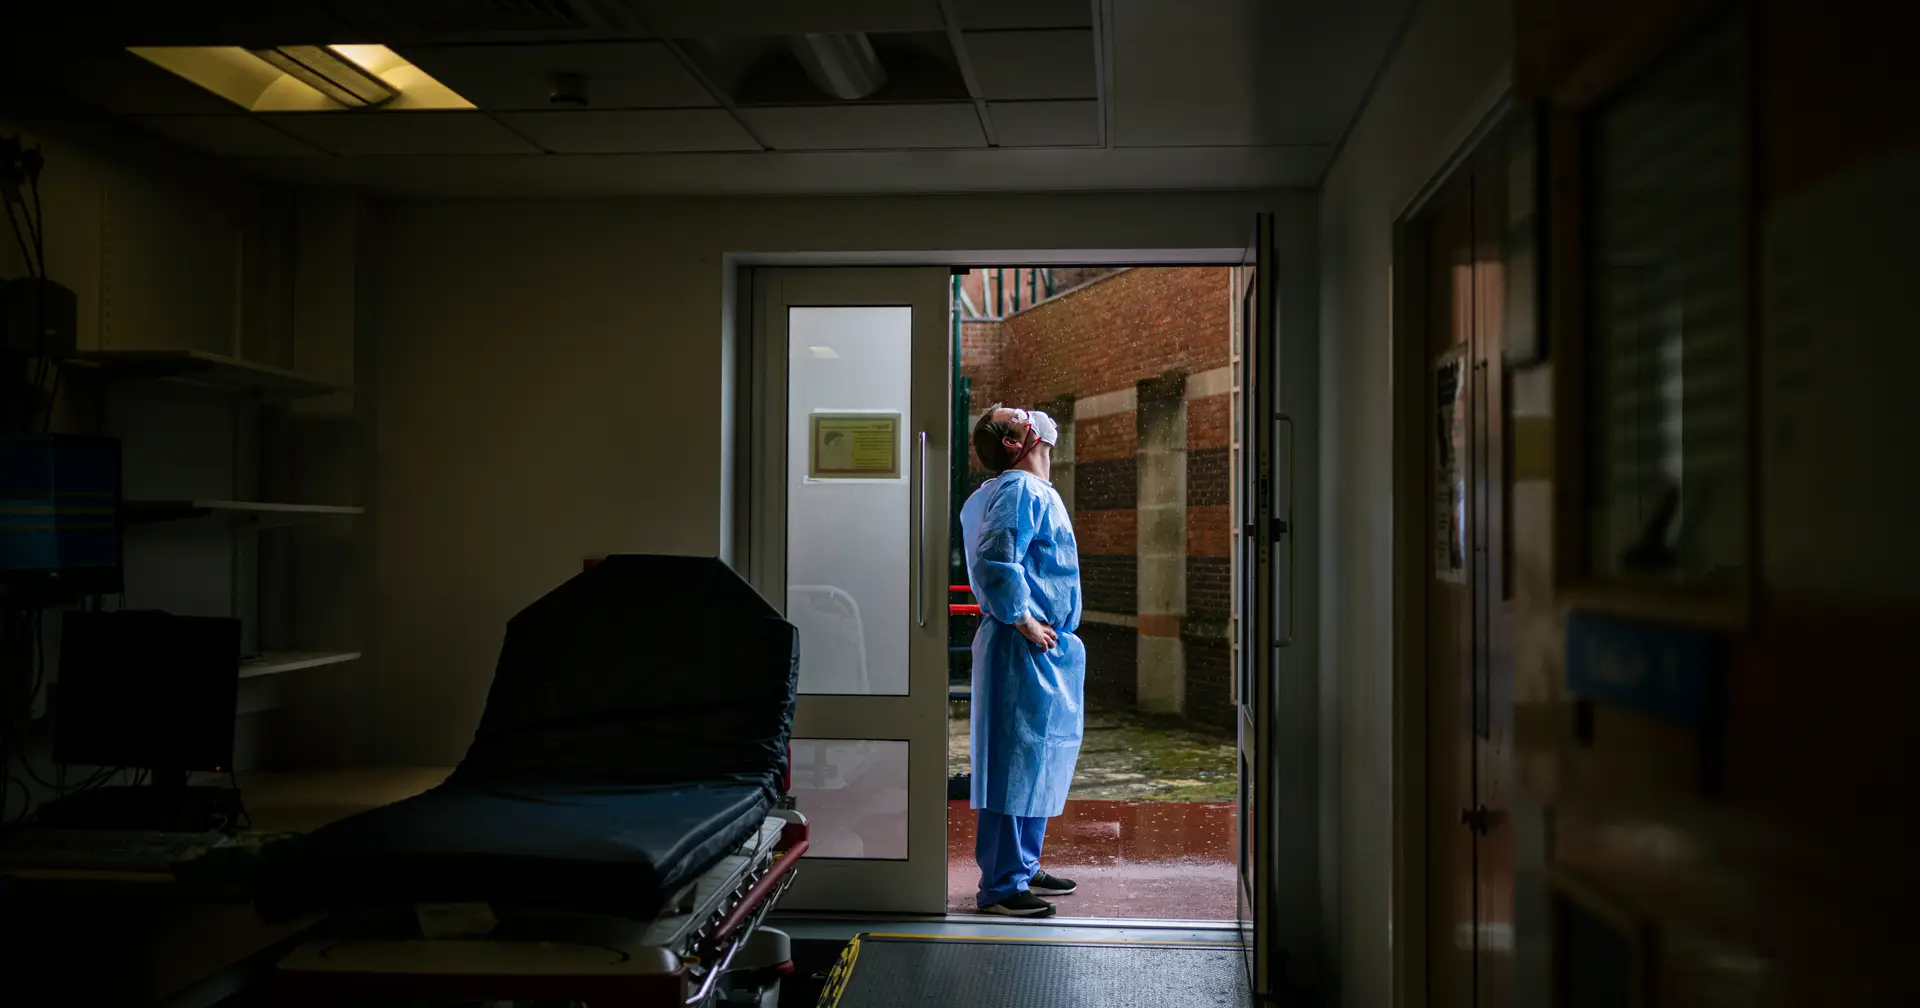 Falta de profissionais leva vários hospitais a encerrar serviços novamente